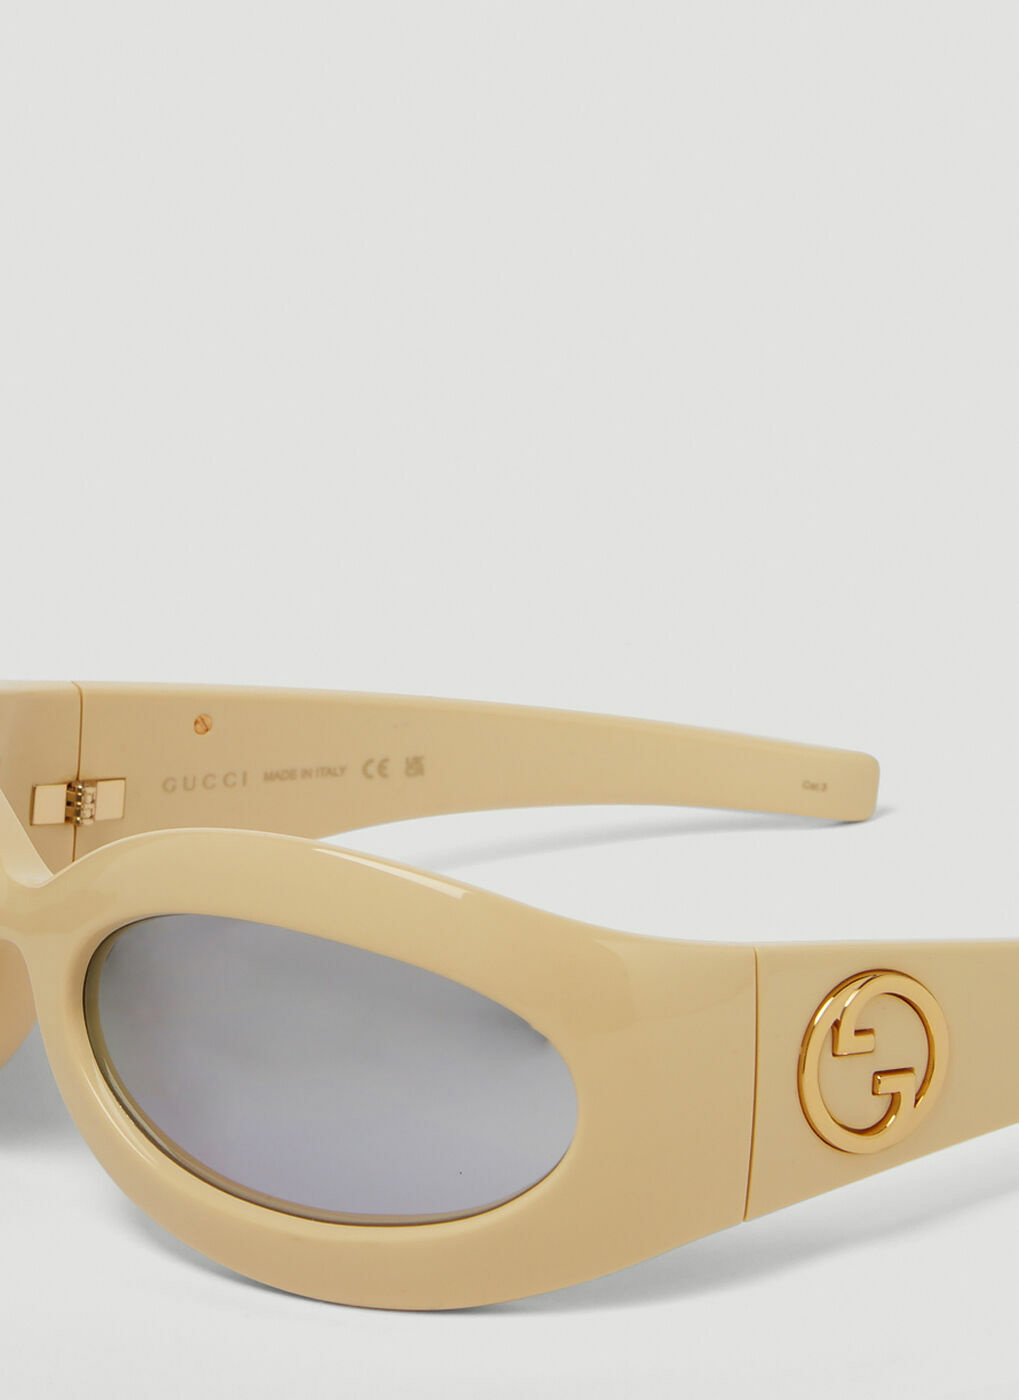 Gucci rectangular wrap-around sunglasses in black acetate.